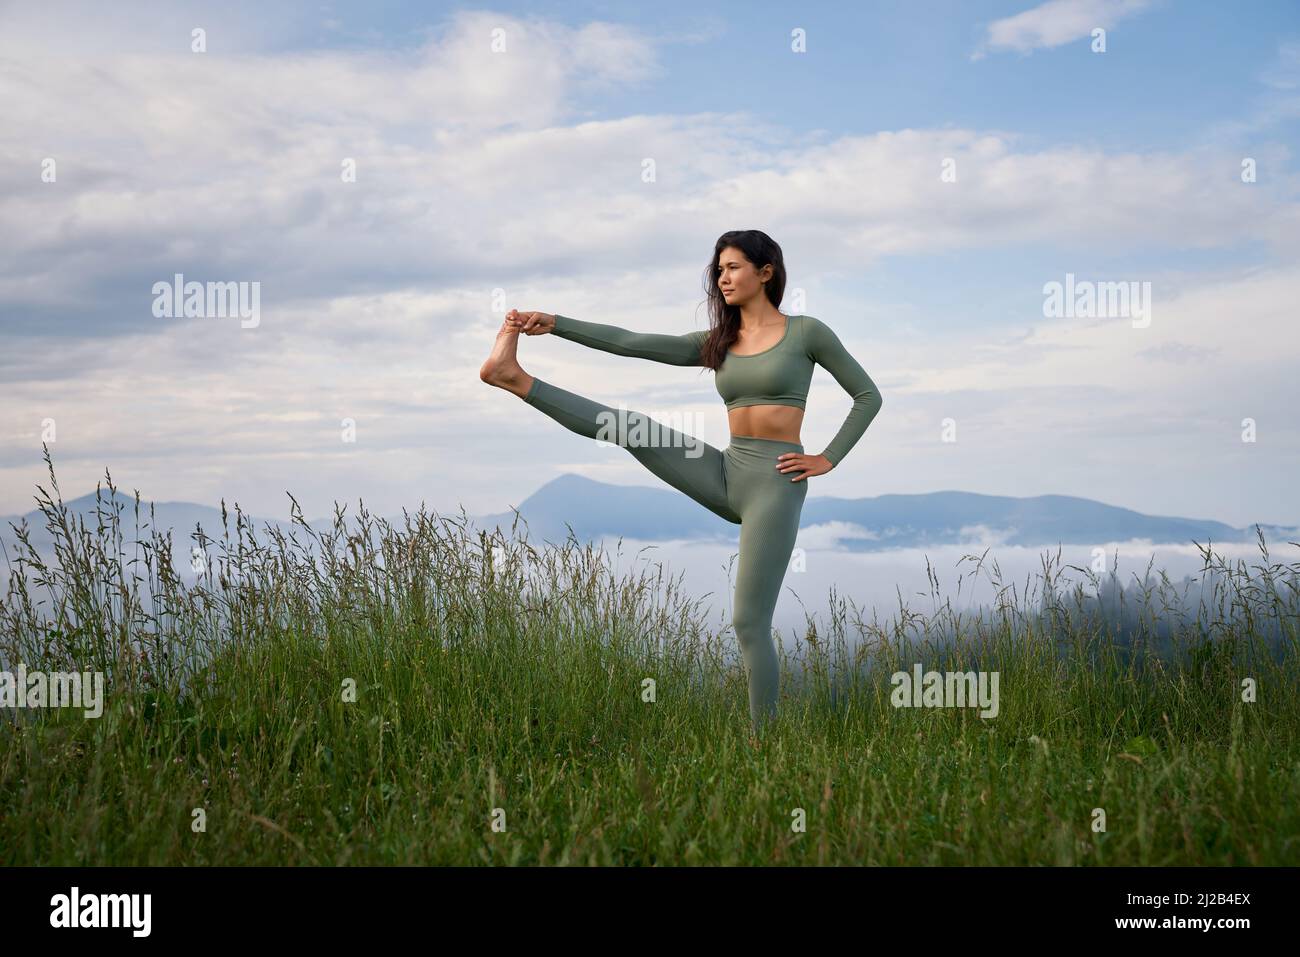 Junge sportliche Frau mit aktivem Outfit, die im Stretching-Training in den Sommerbergen trainiert. Morgens Zeit für aktives Training. Gesunde Lebensweise. Stockfoto